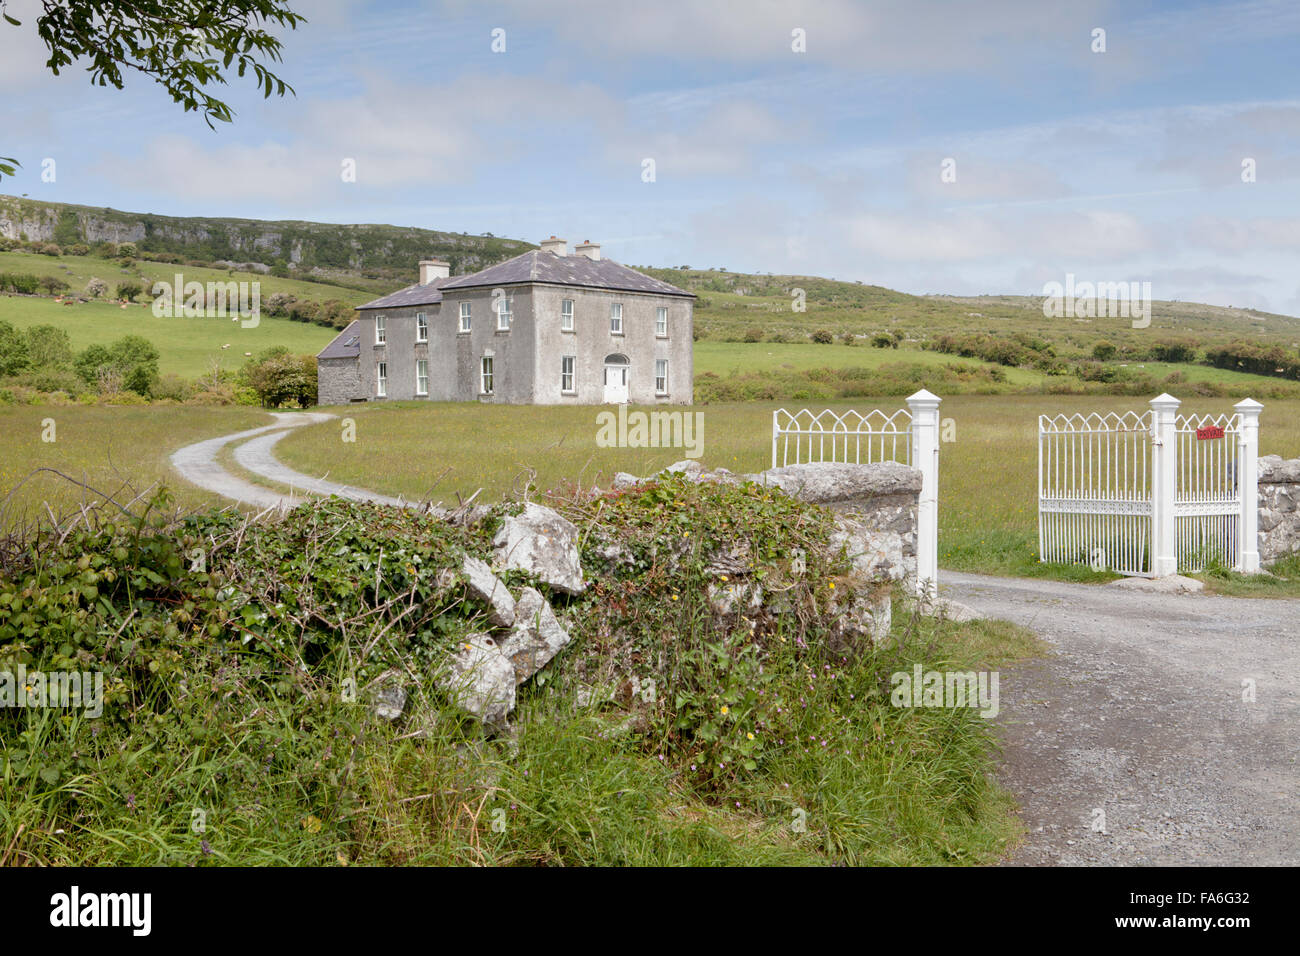 Das Haus bekannt als Vater Teds-Haus in der Kult-TV-Serie Vater Ted. Der Burren, Irland Stockfoto